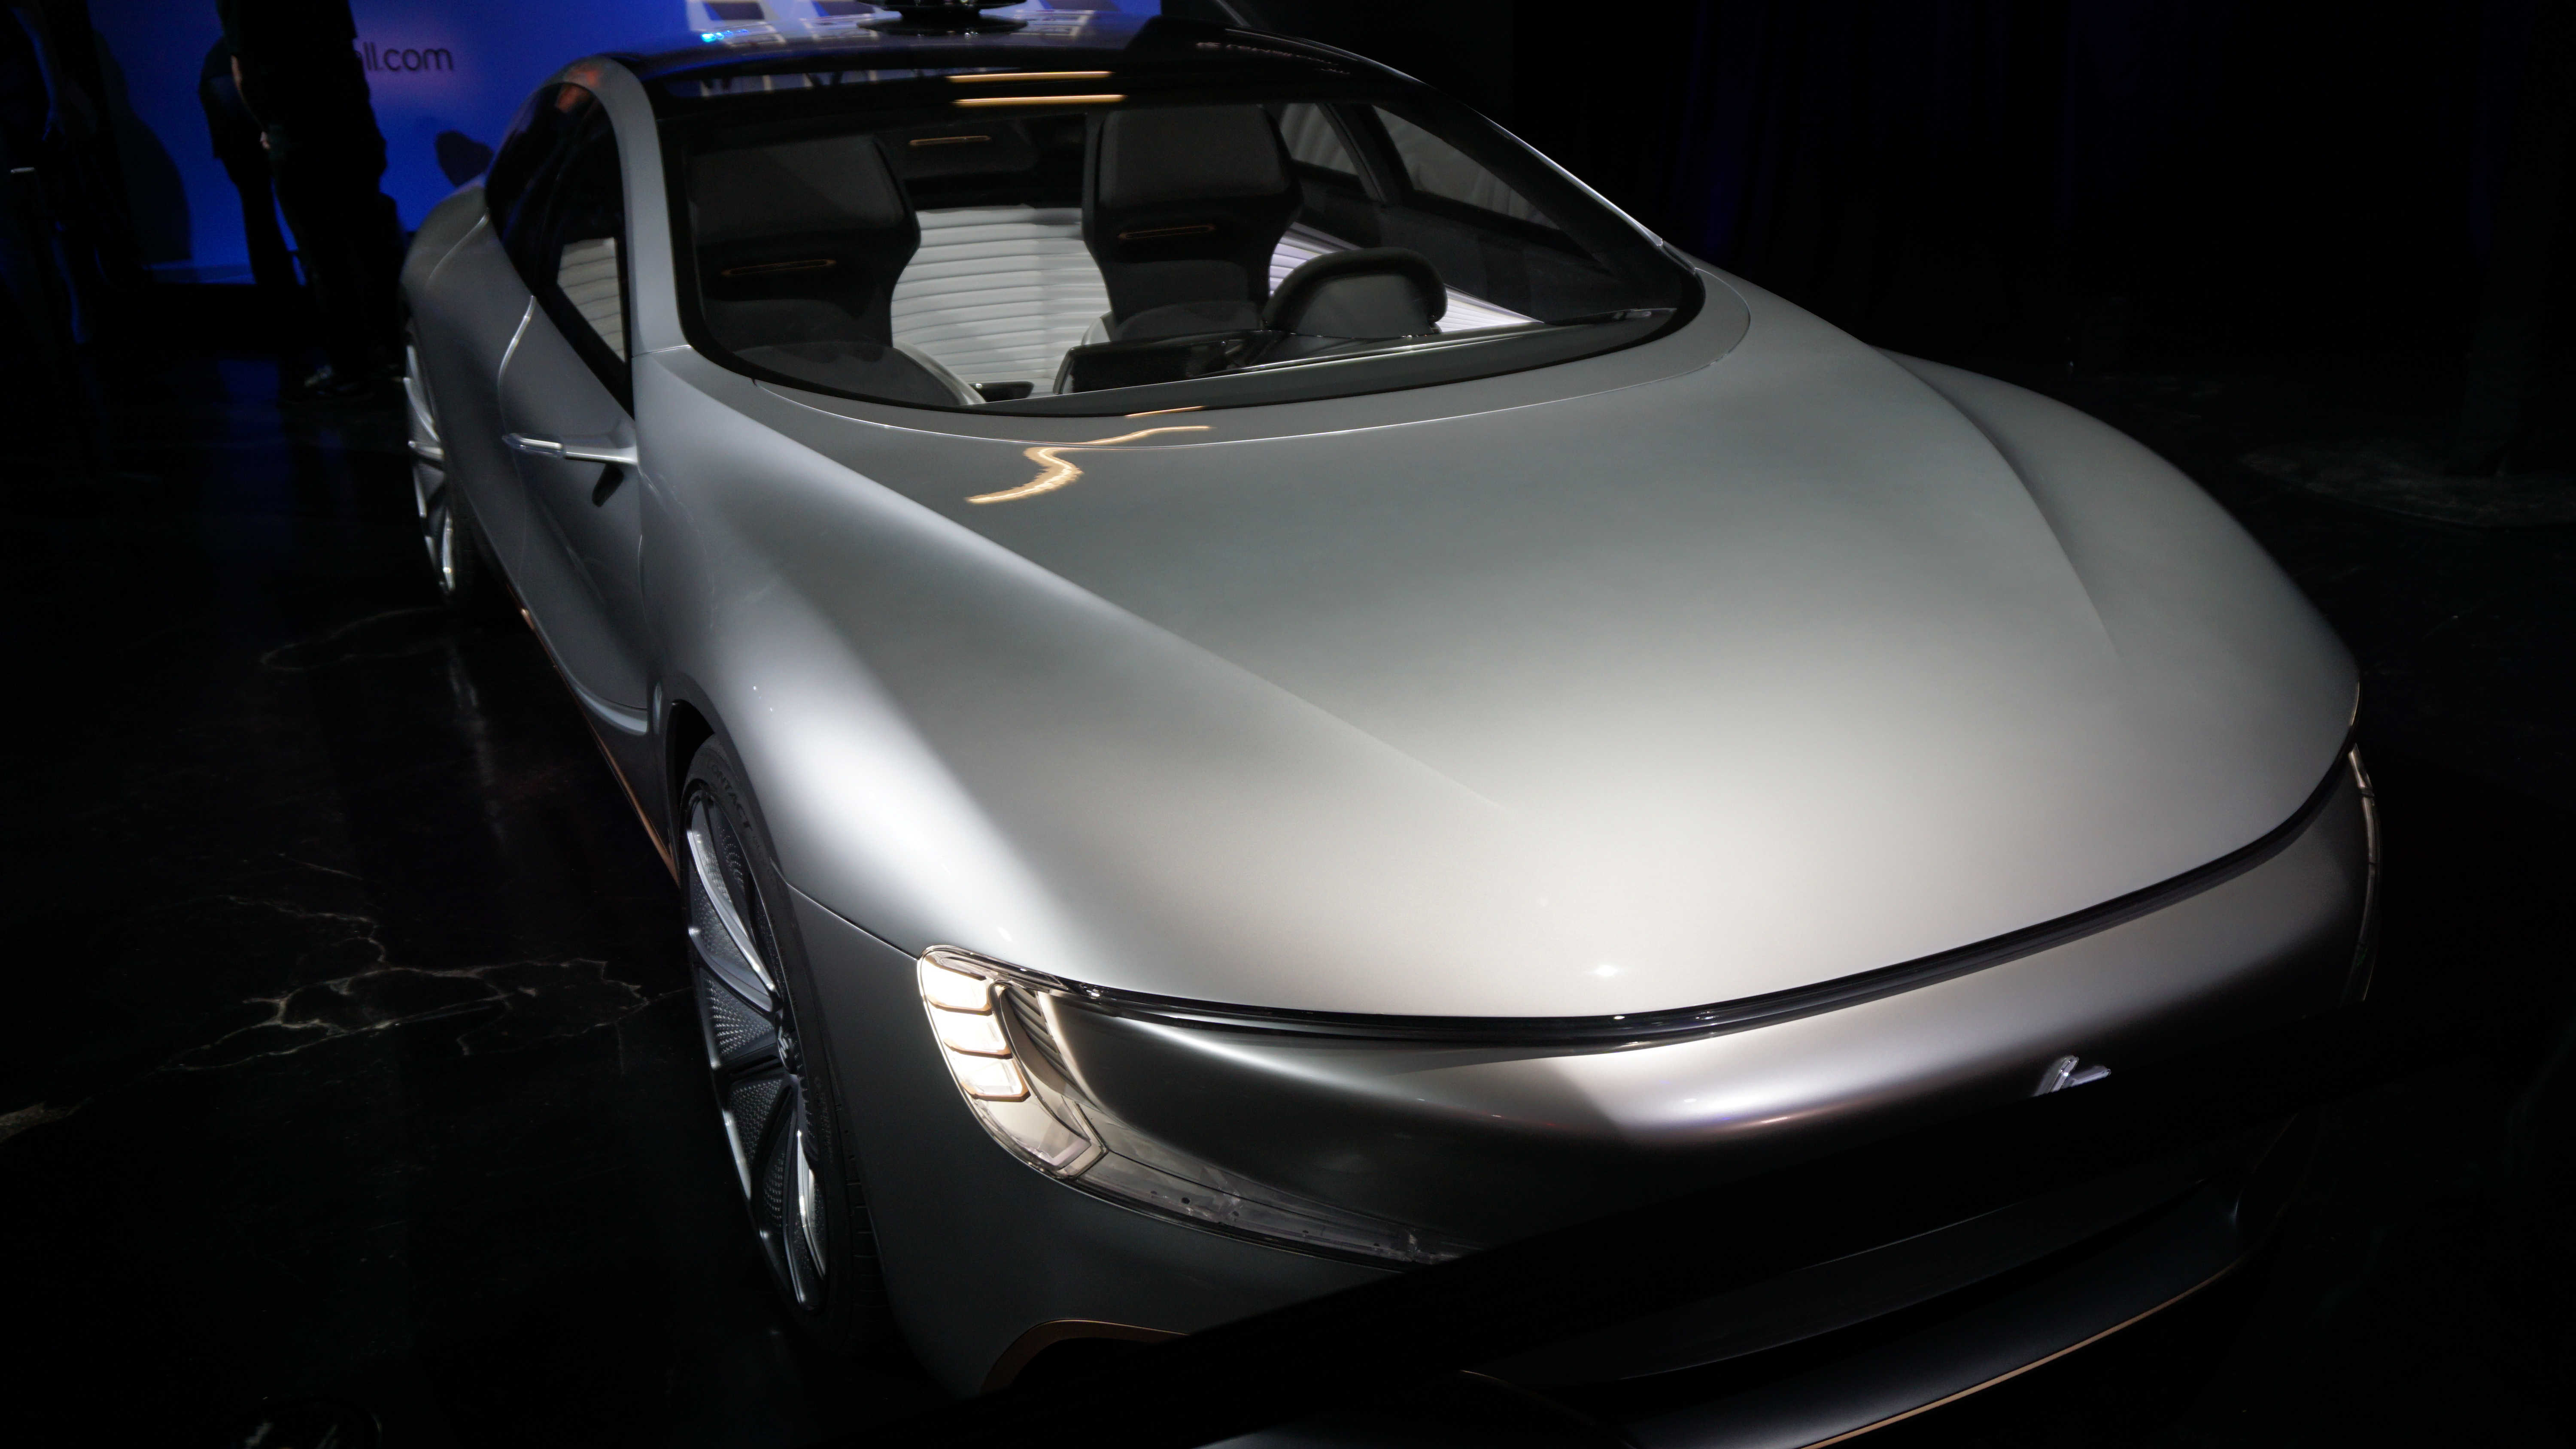 据丁磊介绍,乐视超级汽车已经建立了全球研发布局,并在全球范围内